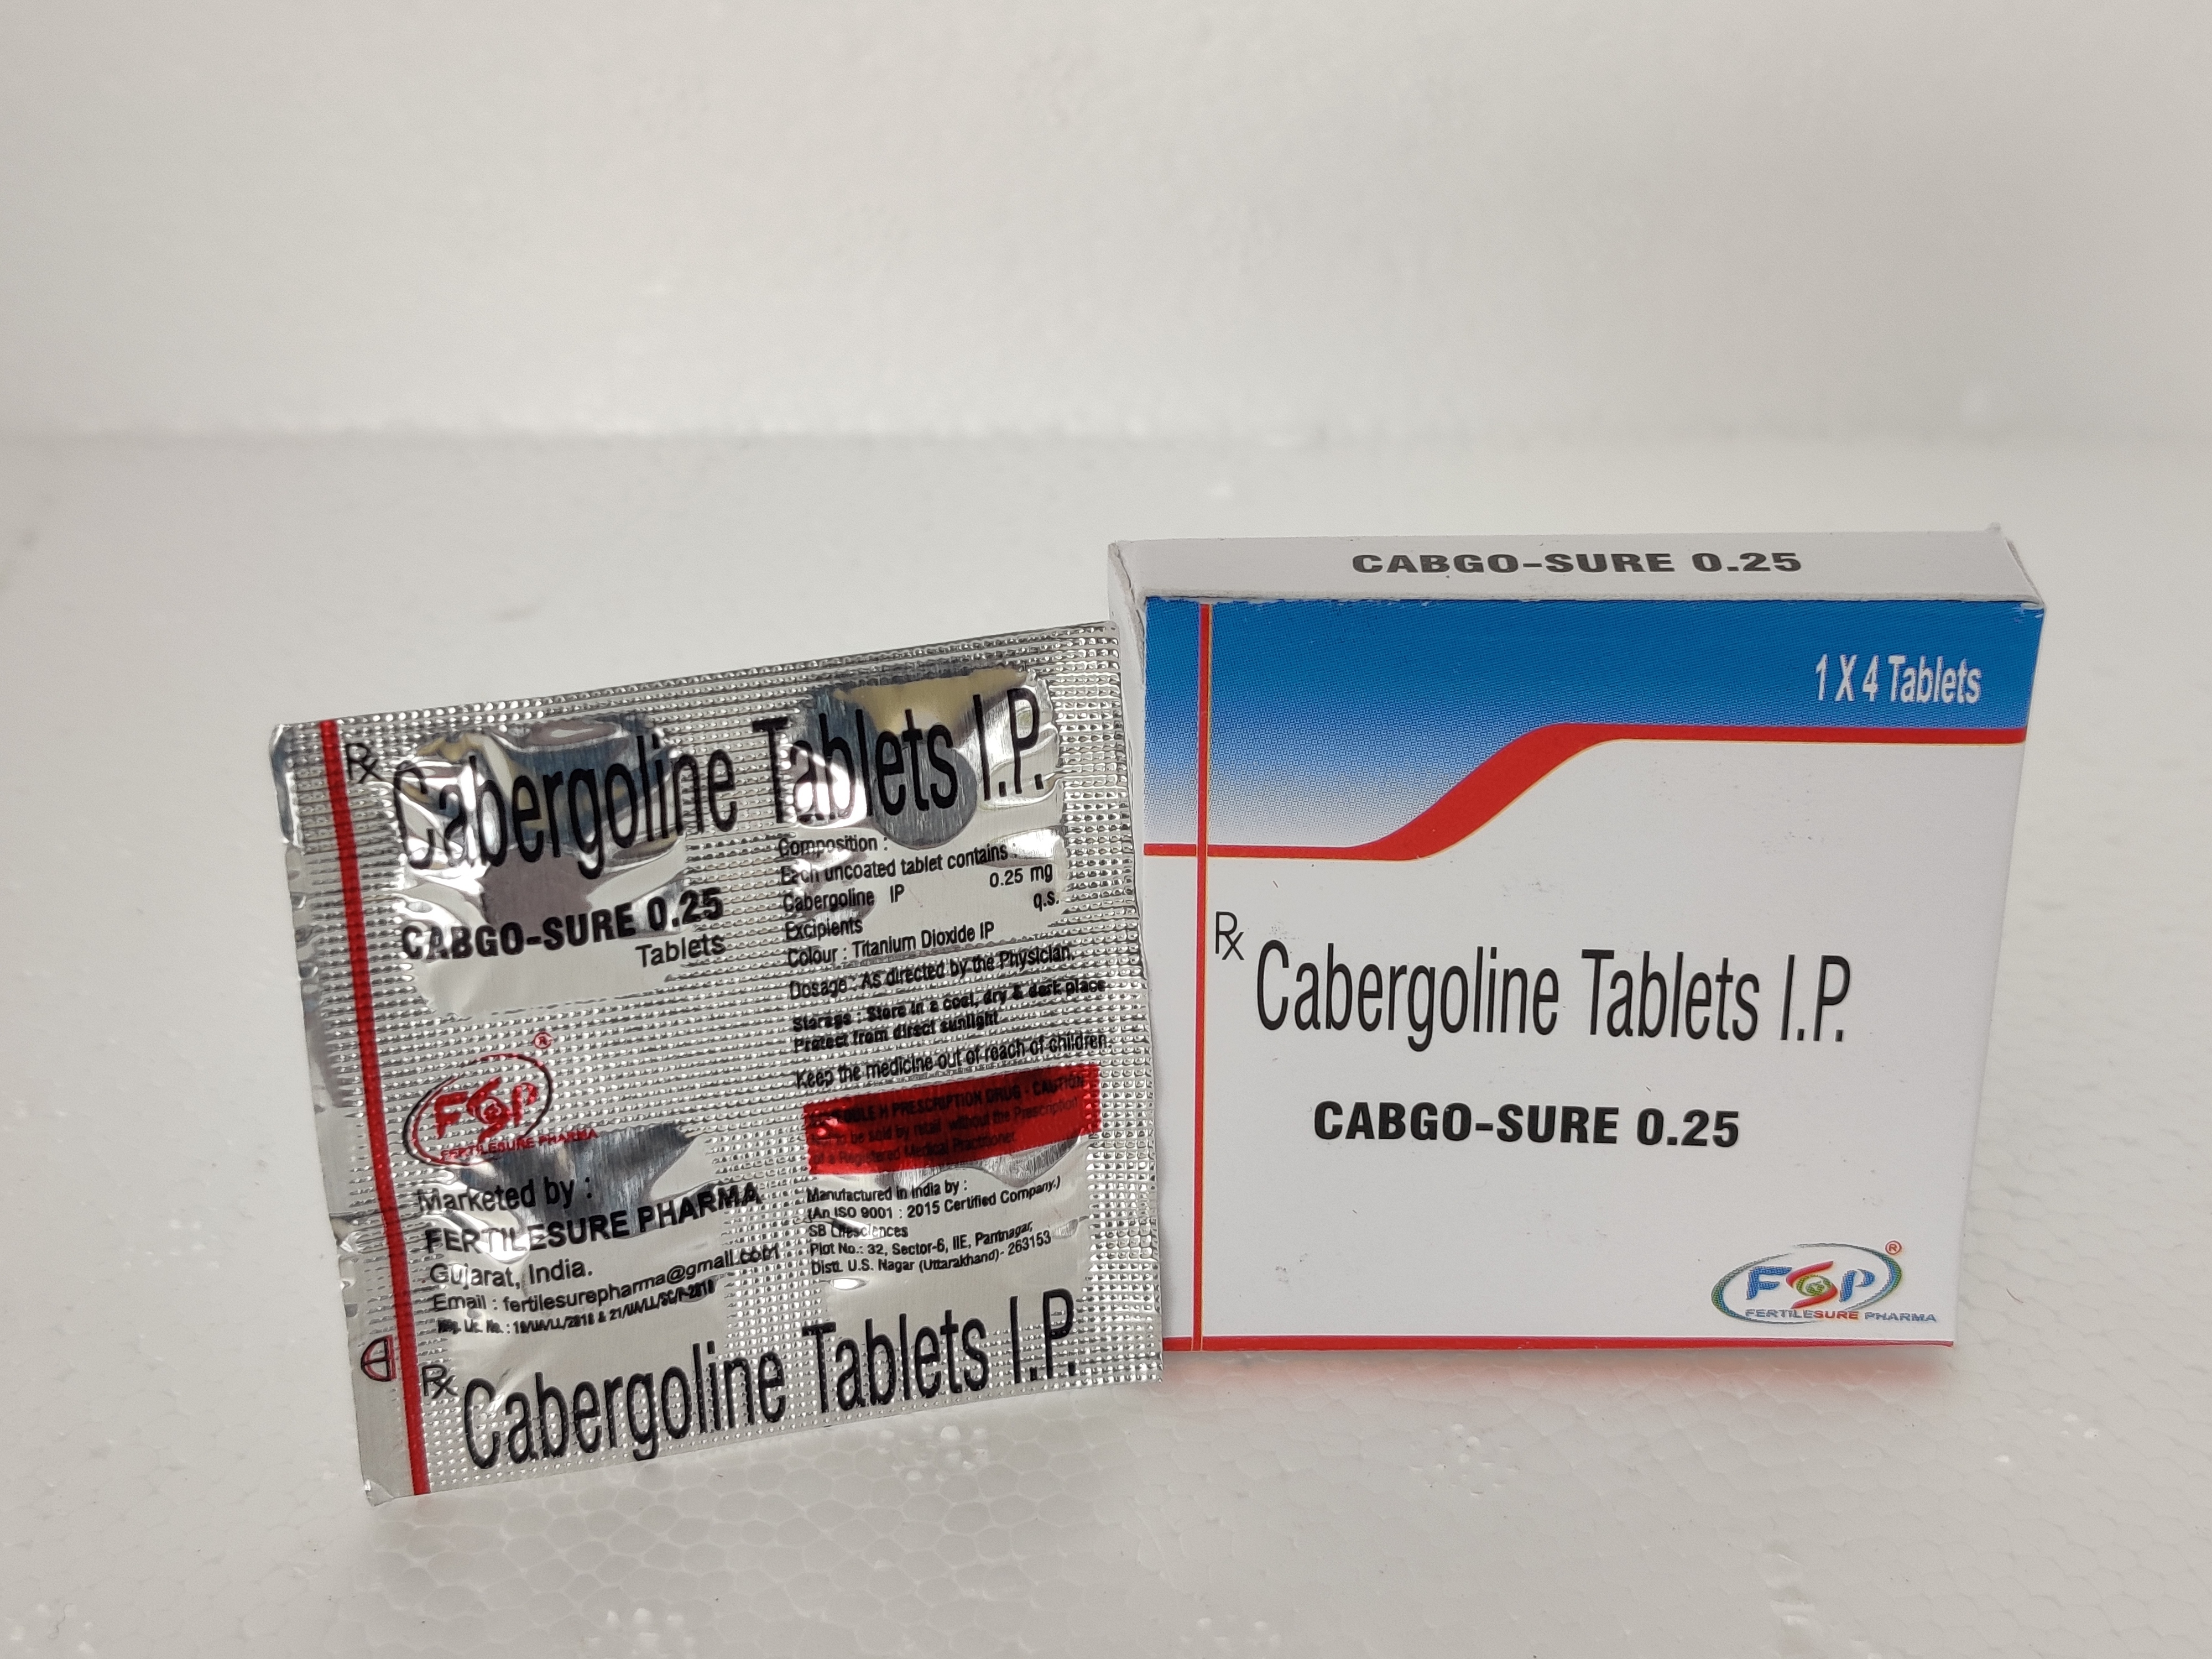 CABGO-SURE 0.25 (Cabergoline tablet 0.25mg)